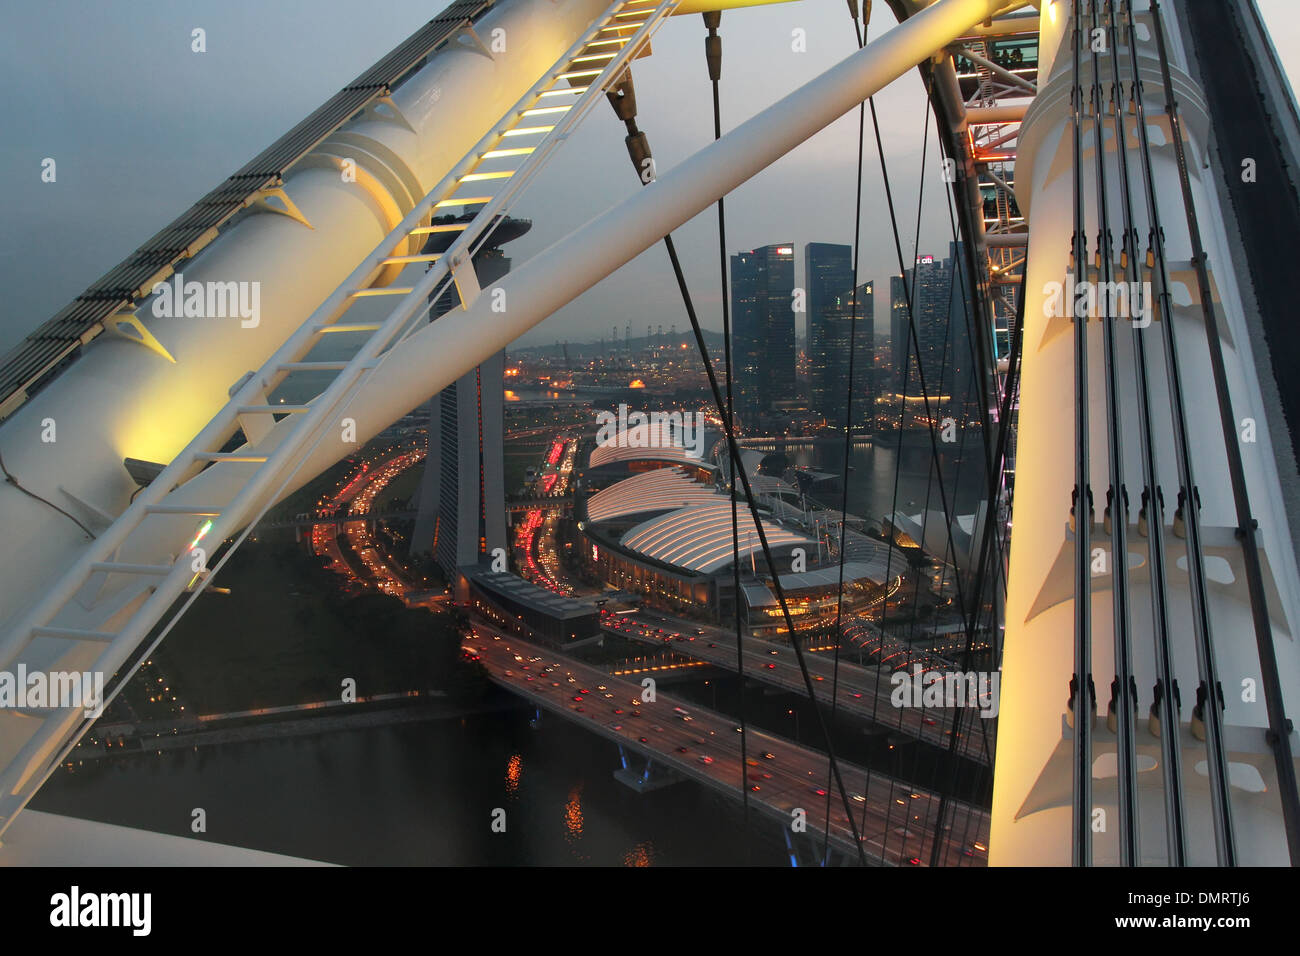 Struktur der Singapore Flyer. Eine Fahrt auf dem Riesenrad Singapore Flyer. Singapur. Stockfoto